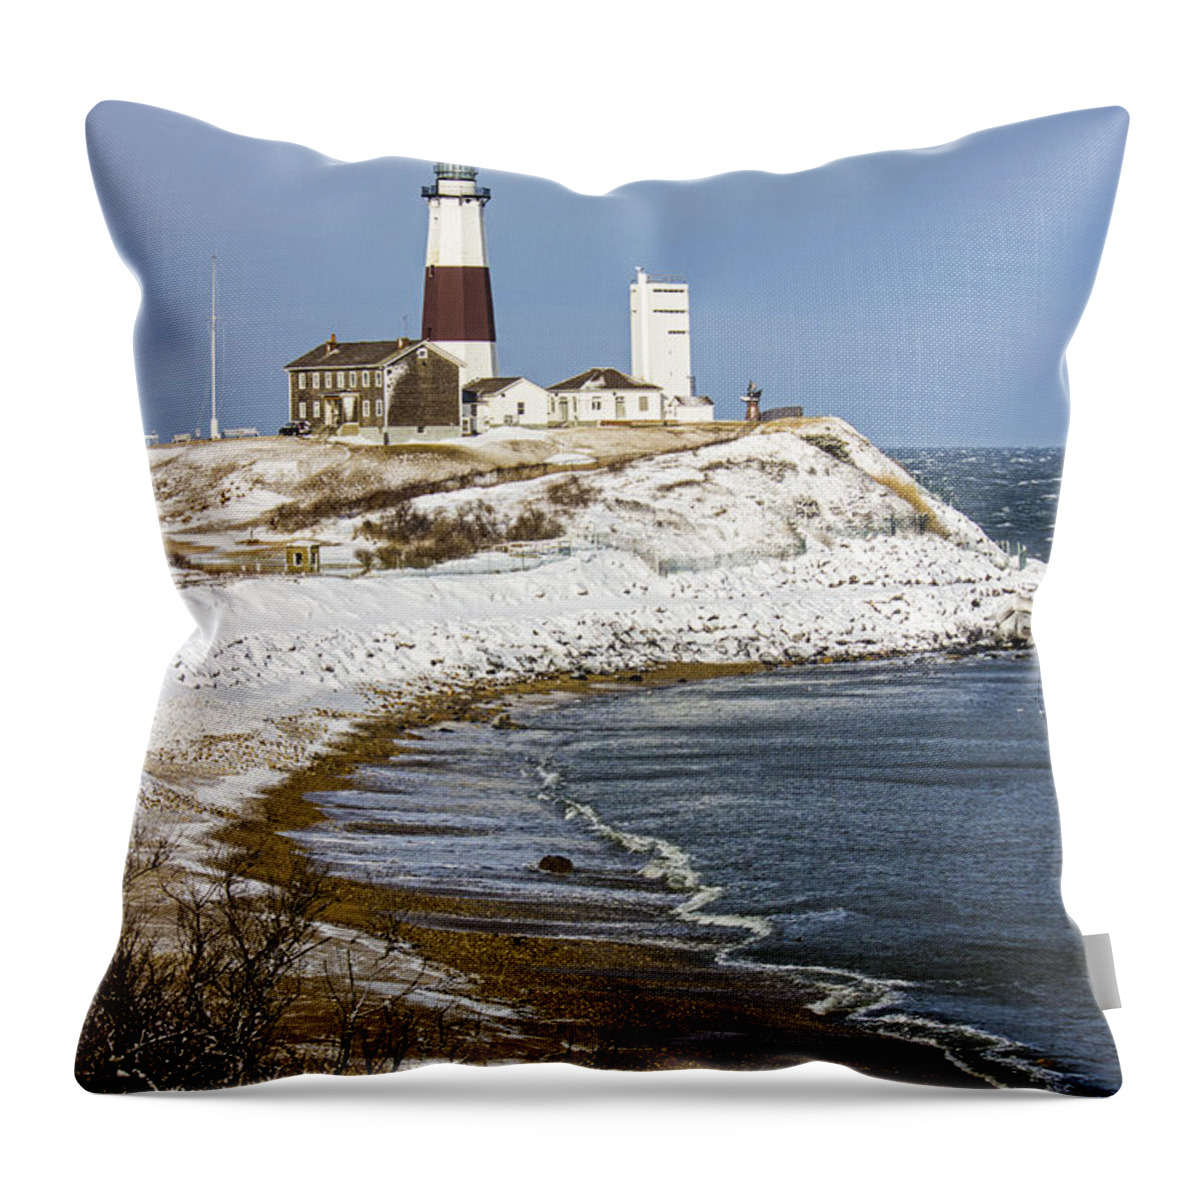 Montauk Point Lighthouse Throw Pillow featuring the photograph Montauk Snow by Robert Seifert